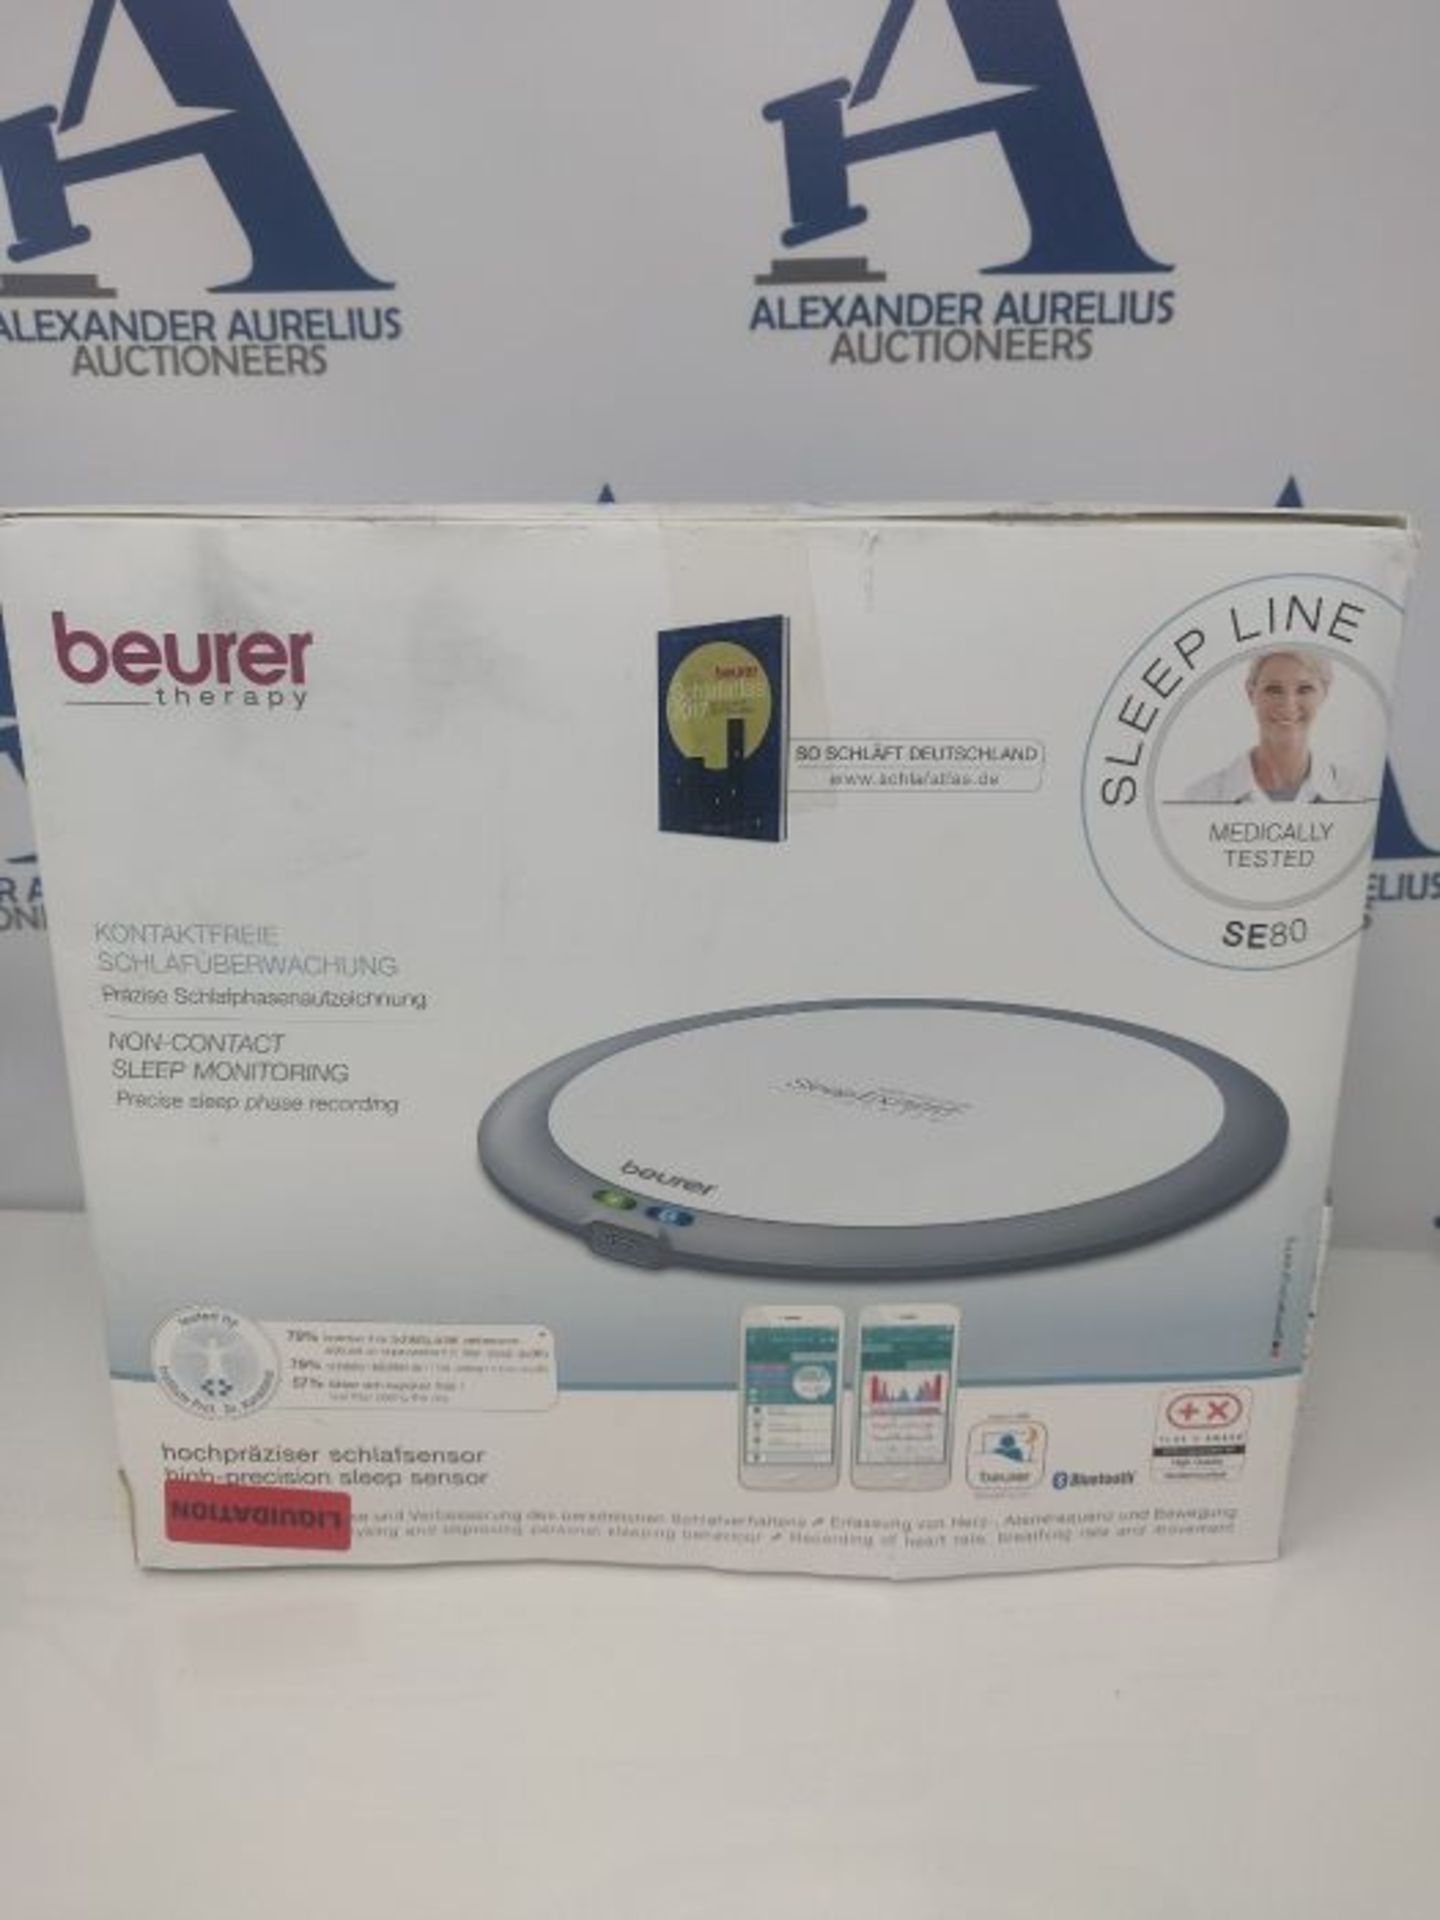 RRP £124.00 Beurer SleepExpert SE 80 with Sleep Glass Sleep Sensor for Professional Sleep Analysis - Image 2 of 3